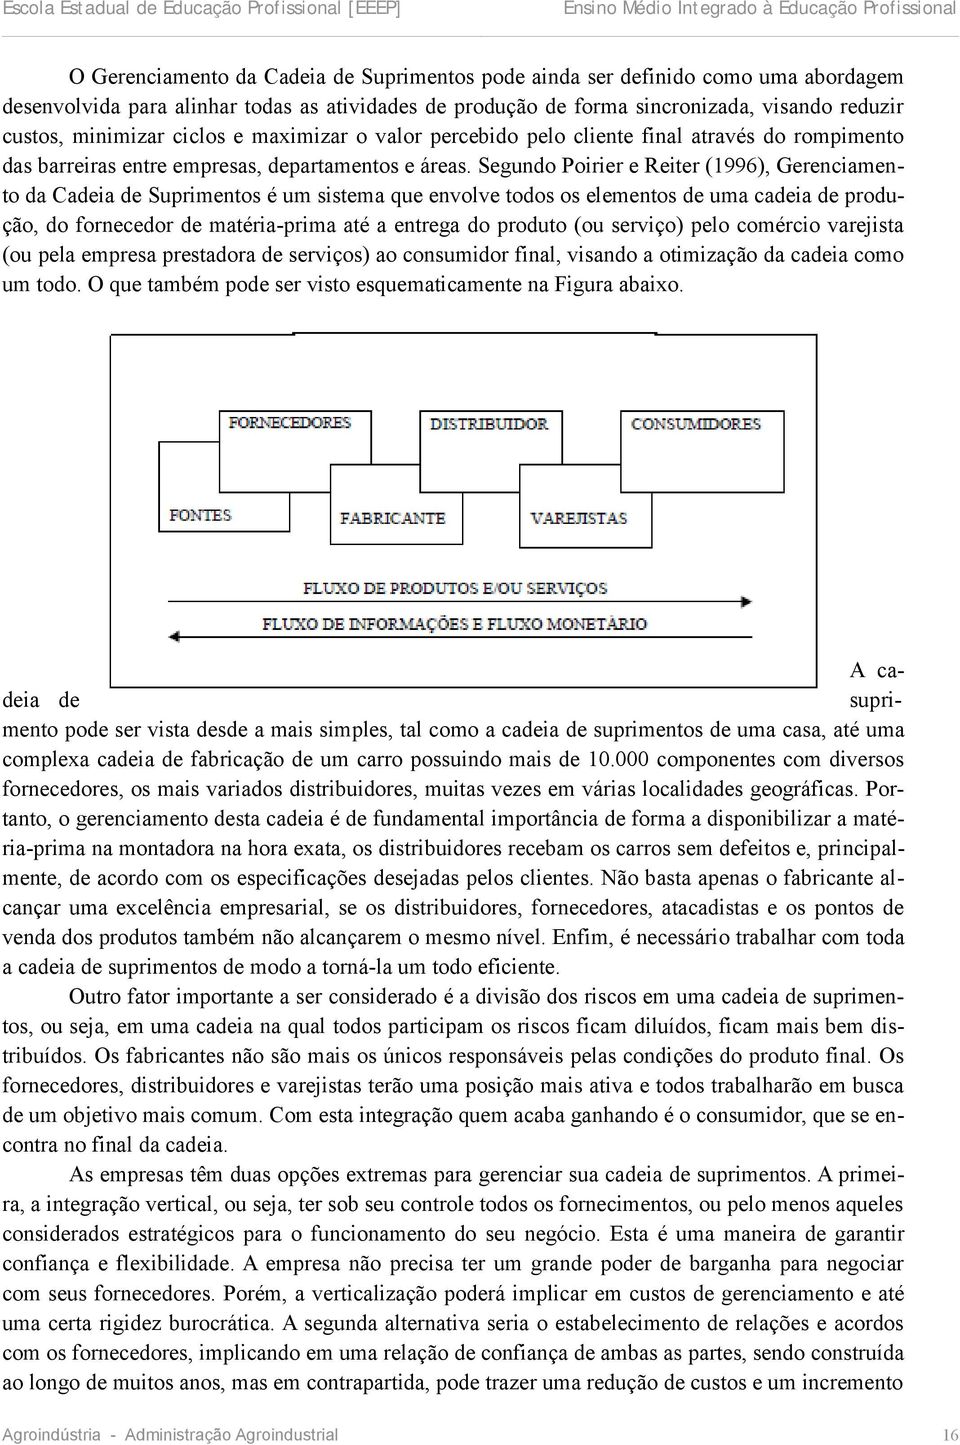 Segundo Poirier e Reiter (1996), Gerenciamento da Cadeia de Suprimentos é um sistema que envolve todos os elementos de uma cadeia de produção, do fornecedor de matéria-prima até a entrega do produto